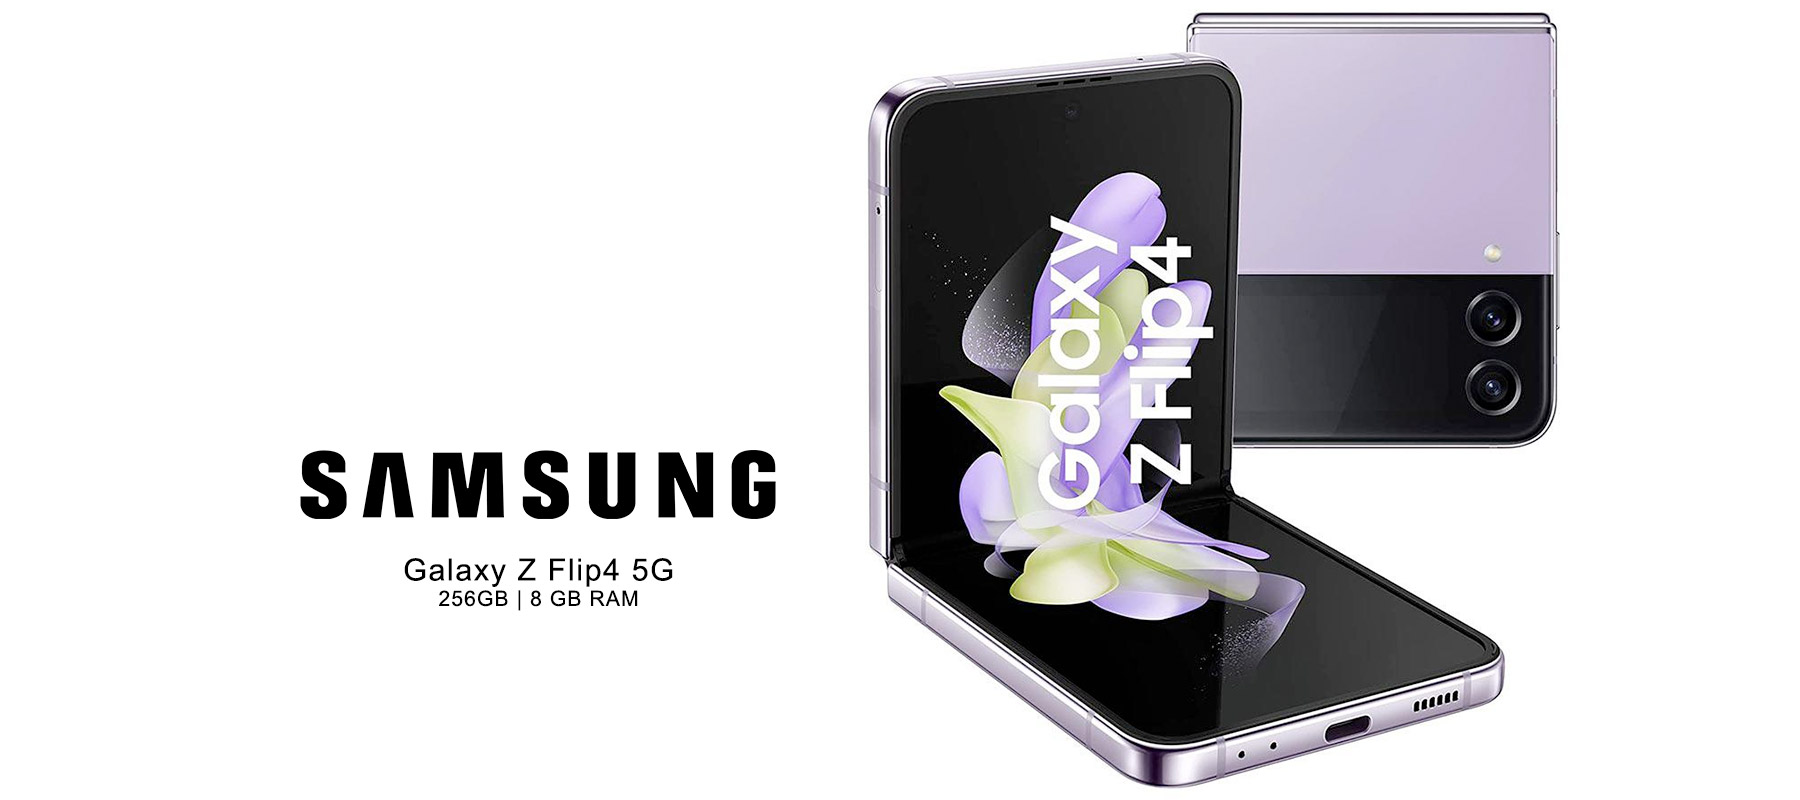 SAMSUNG Galaxy Z Flip4 5G (Bora Purple, 256GB) (8 GB RAM)